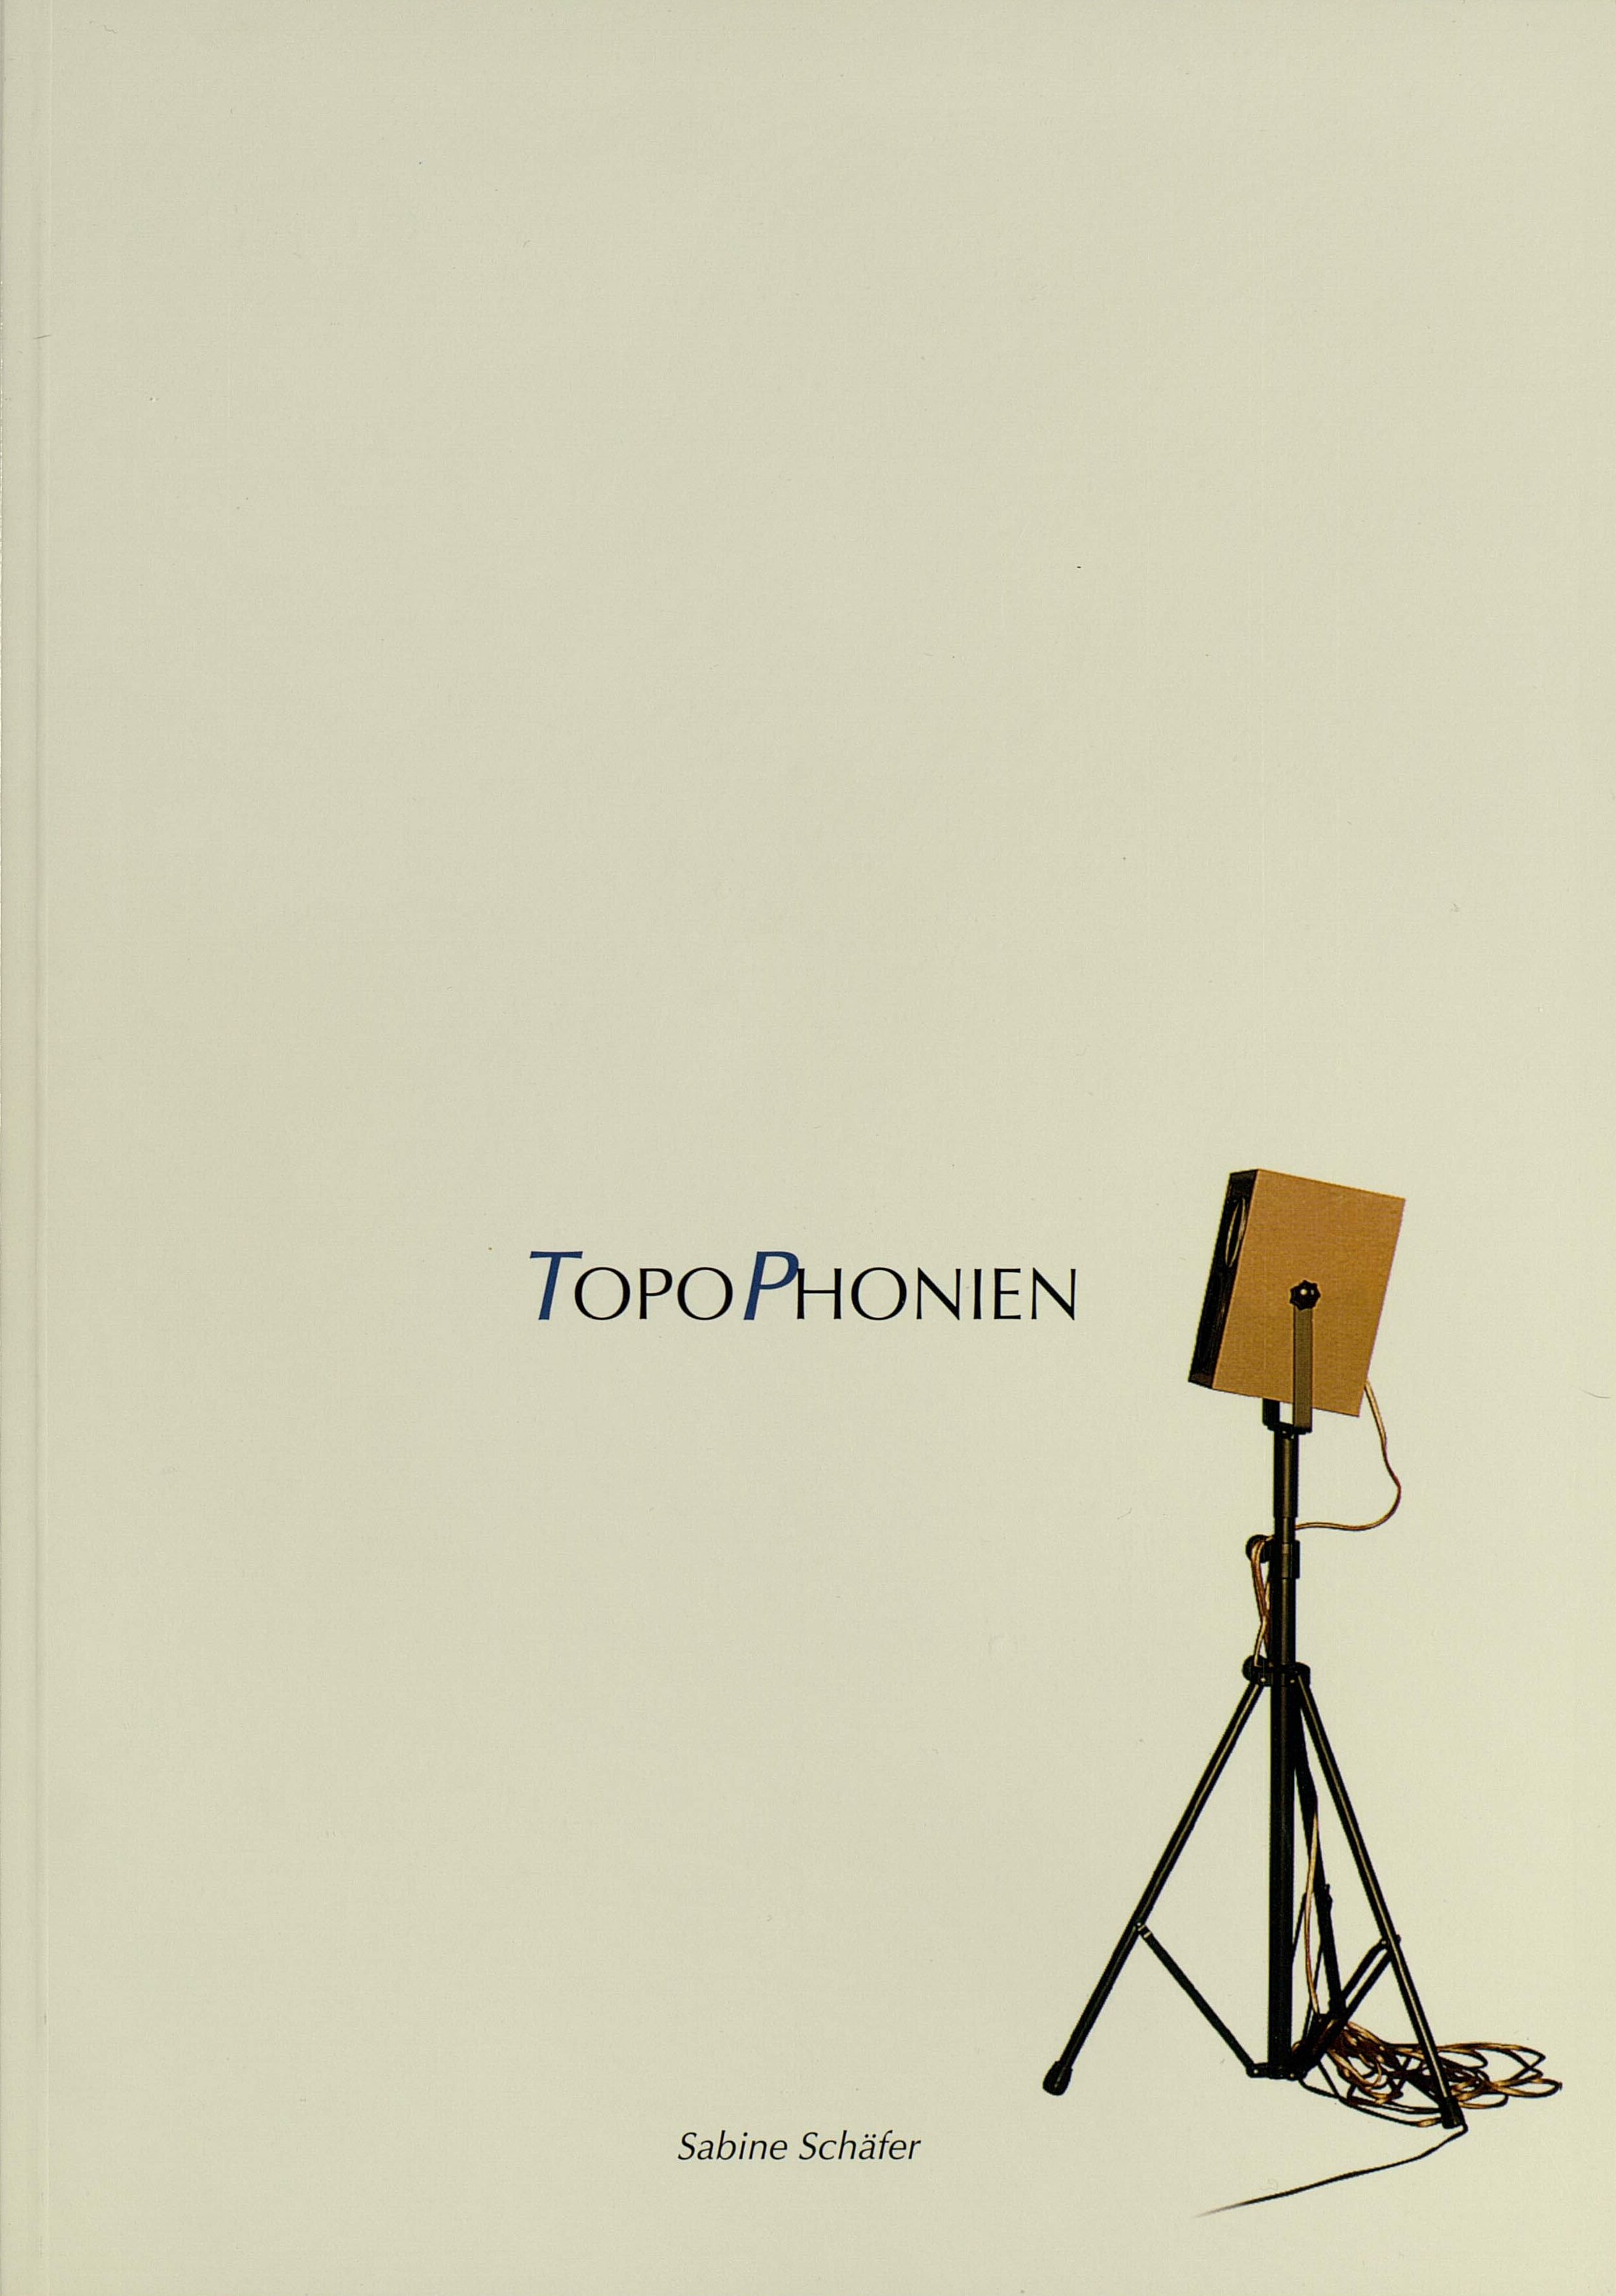 Künstlerkatalog TopoPhonien, Ein Raumklang-Kunstprojekt von Sabine Schäfer, Cremefarbenes Cover mit einem Lautsprecher rechts unten.